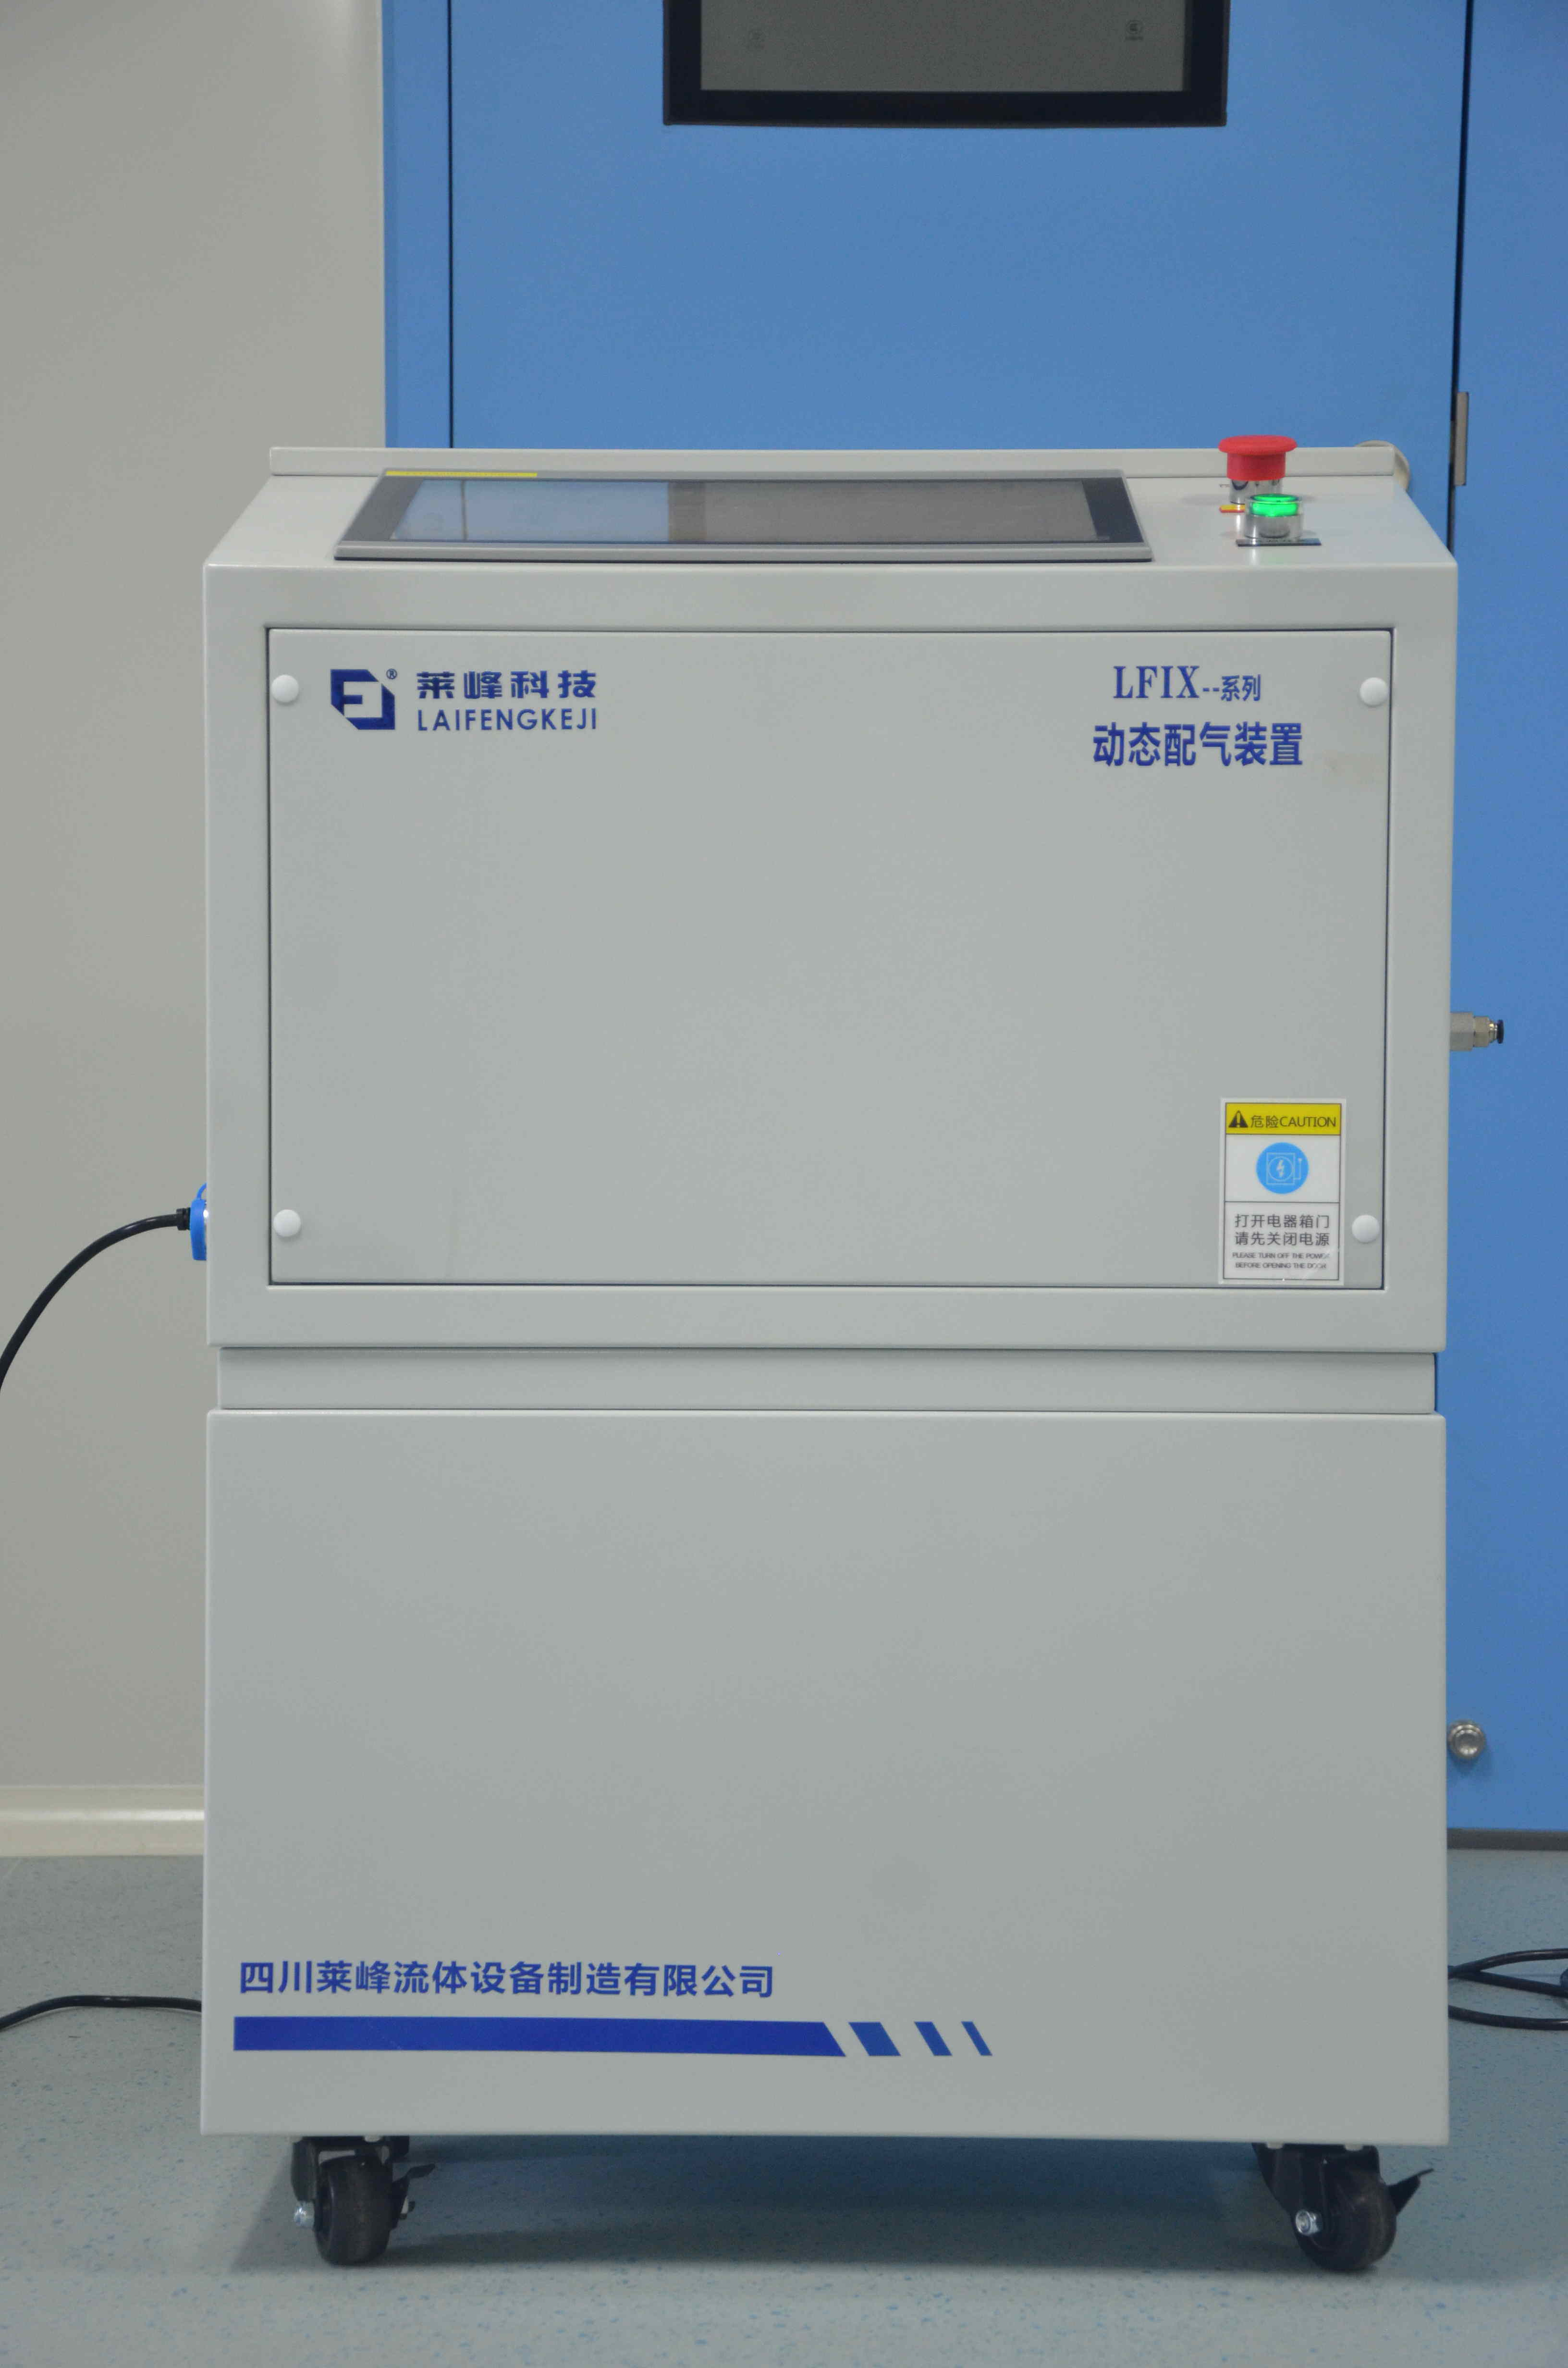 南京某高校在我司定制的LFLX-3000S三路气体配比装置于8月初交付完毕